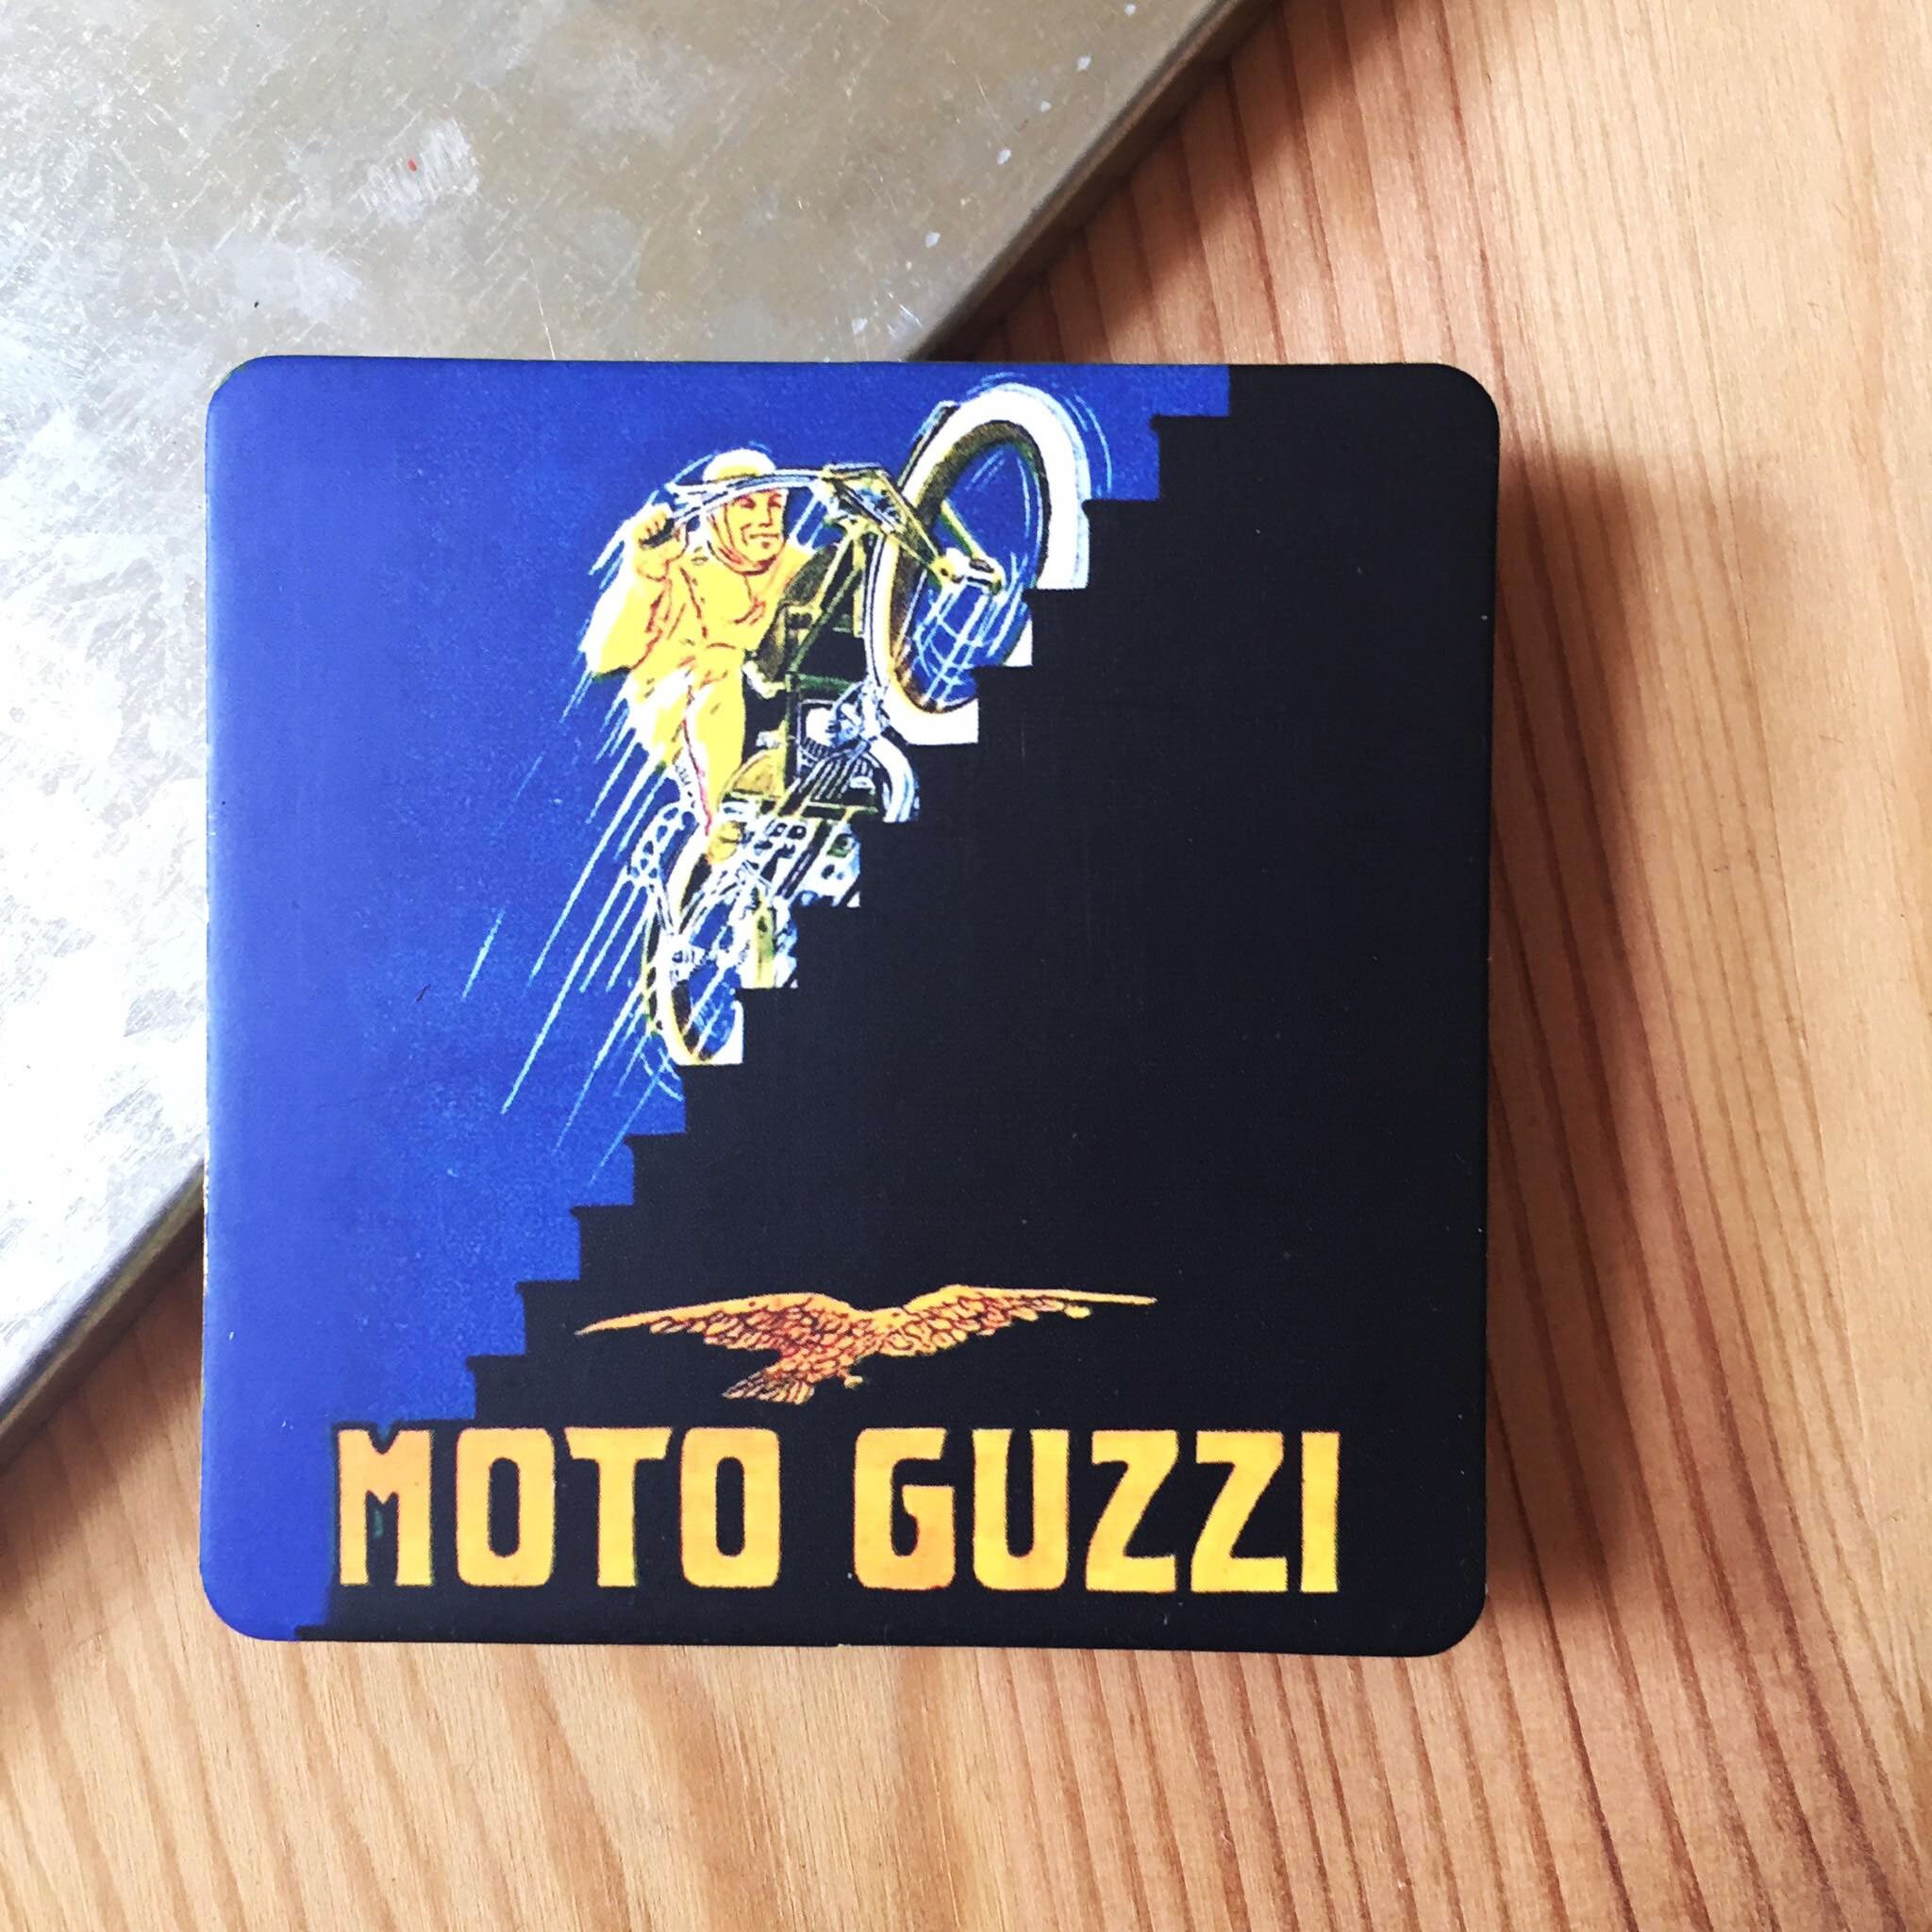 Moto Guzzi Moto Vintage | Nostalgie Aimant Pour Décor Frigo Mural Idées Cadeaux |